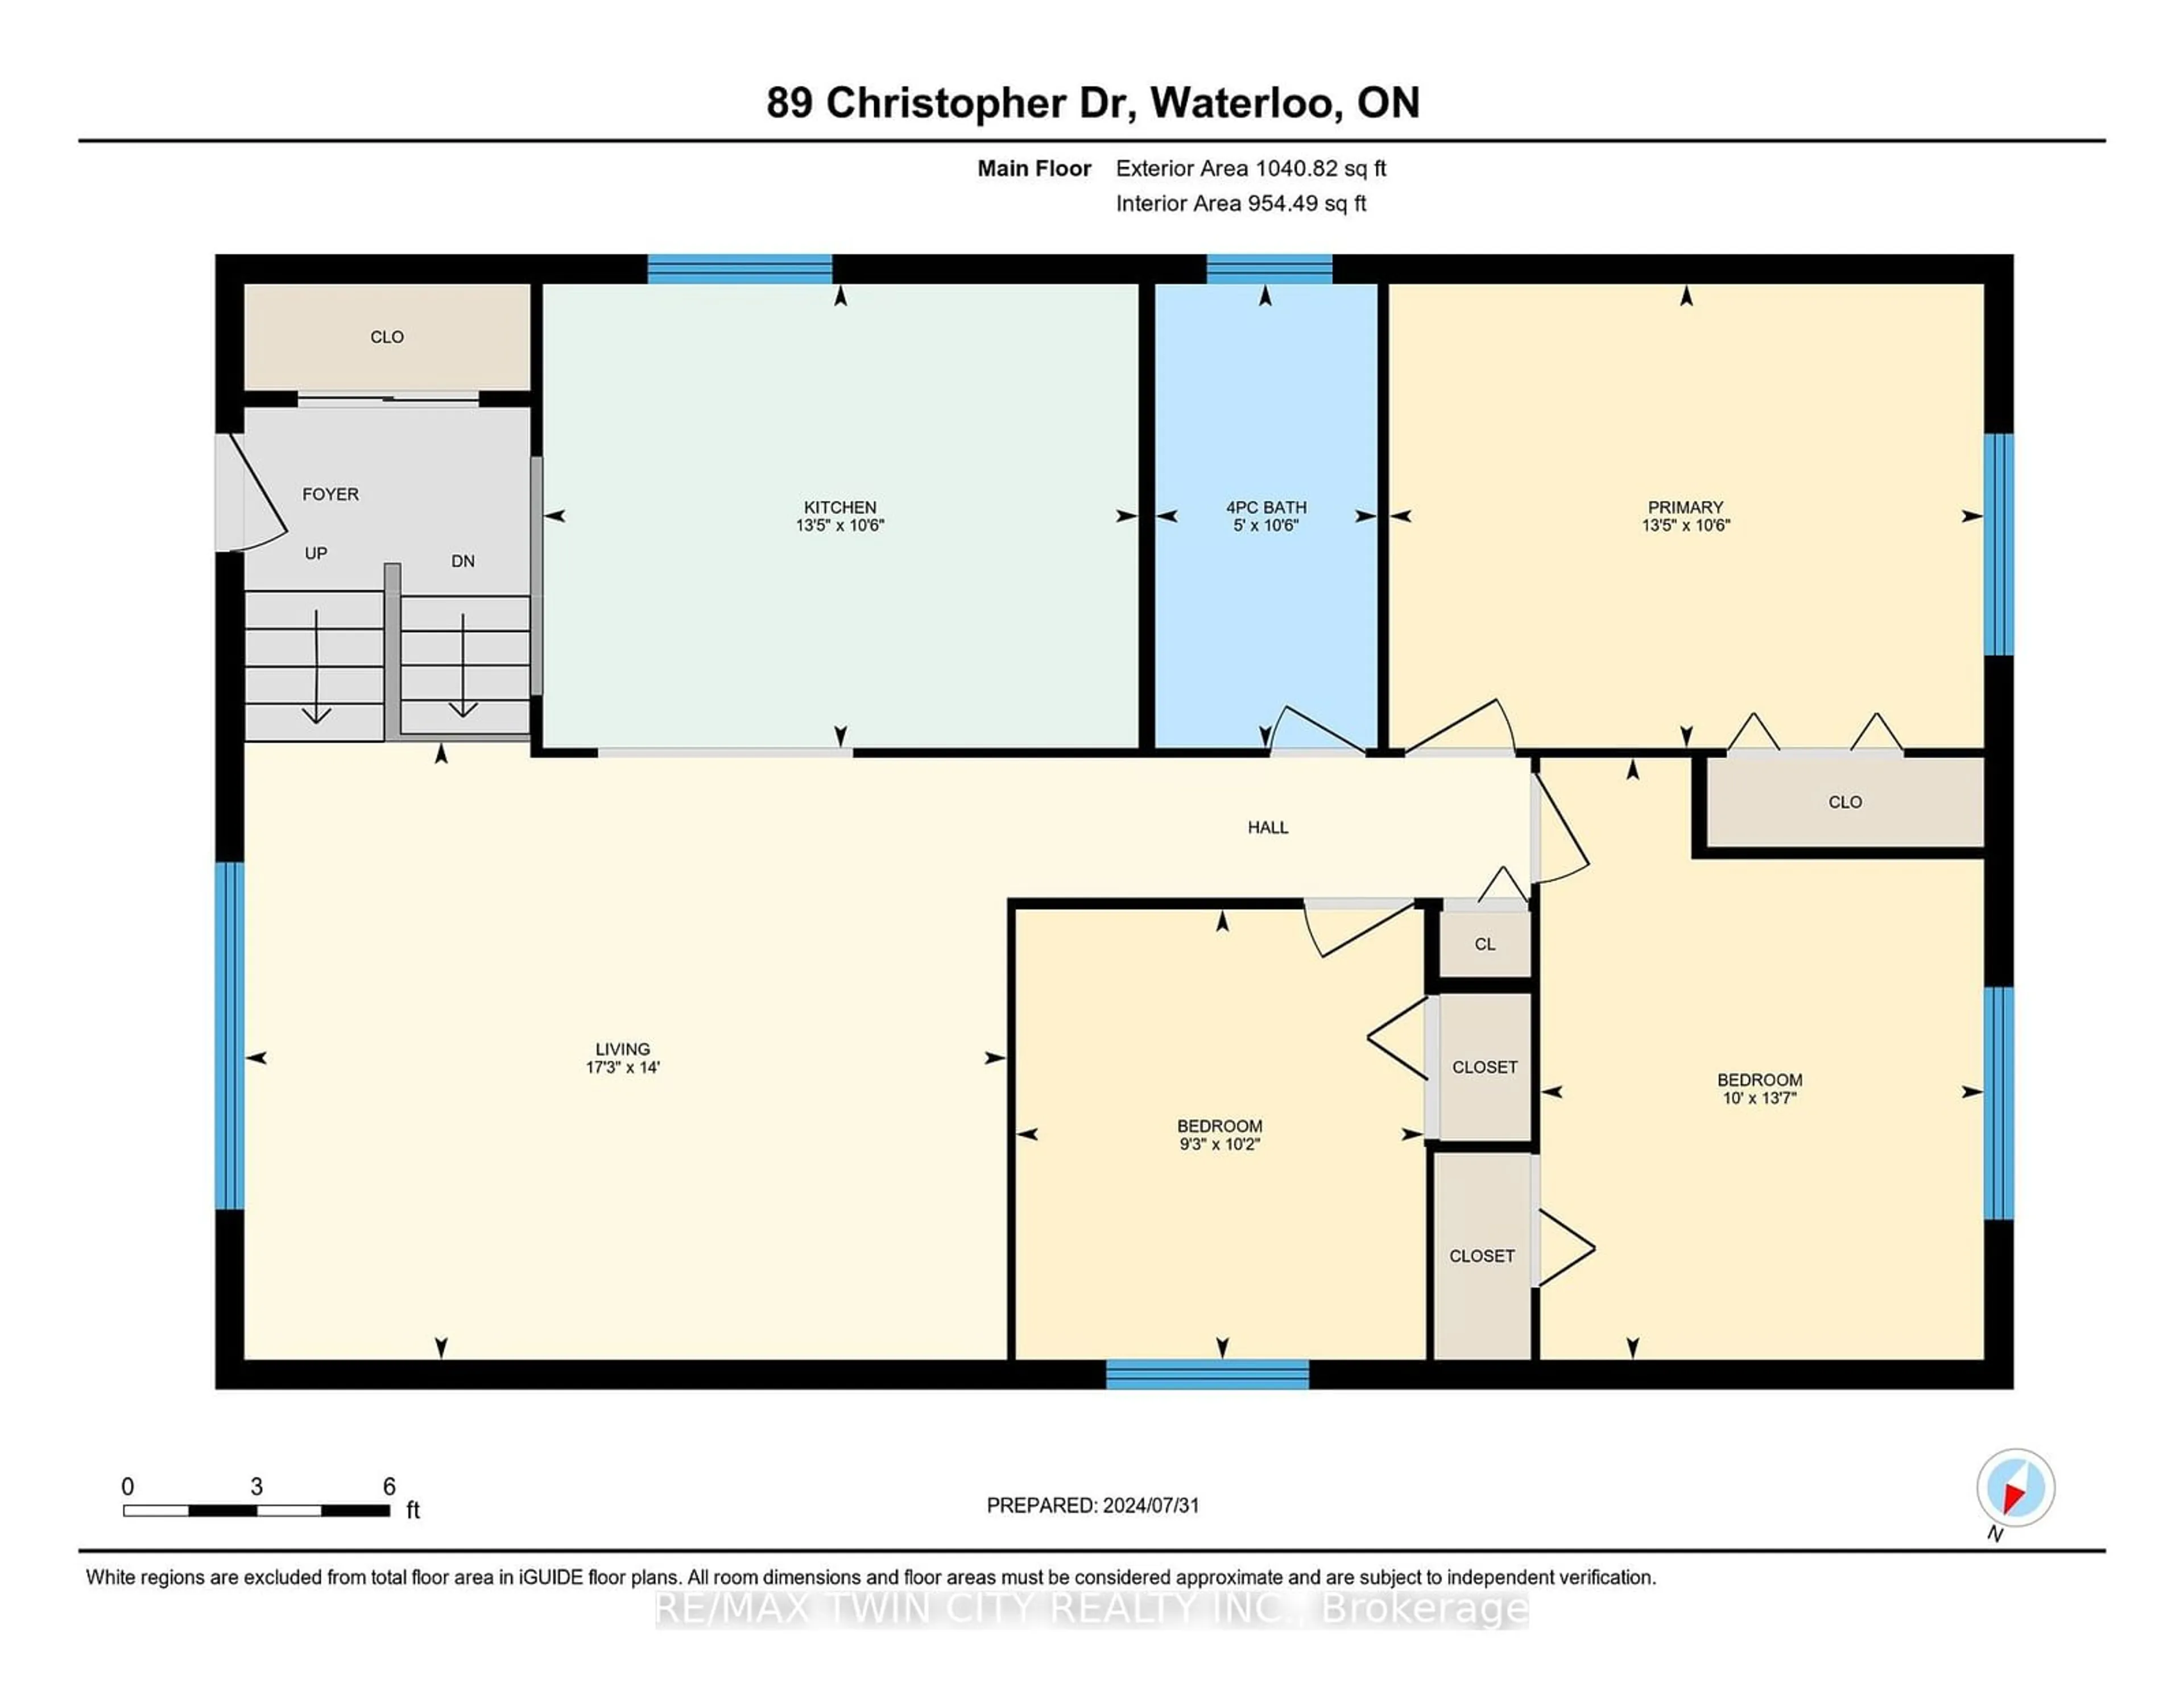 Floor plan for 89 Christopher Dr, Waterloo Ontario N2J 4J6